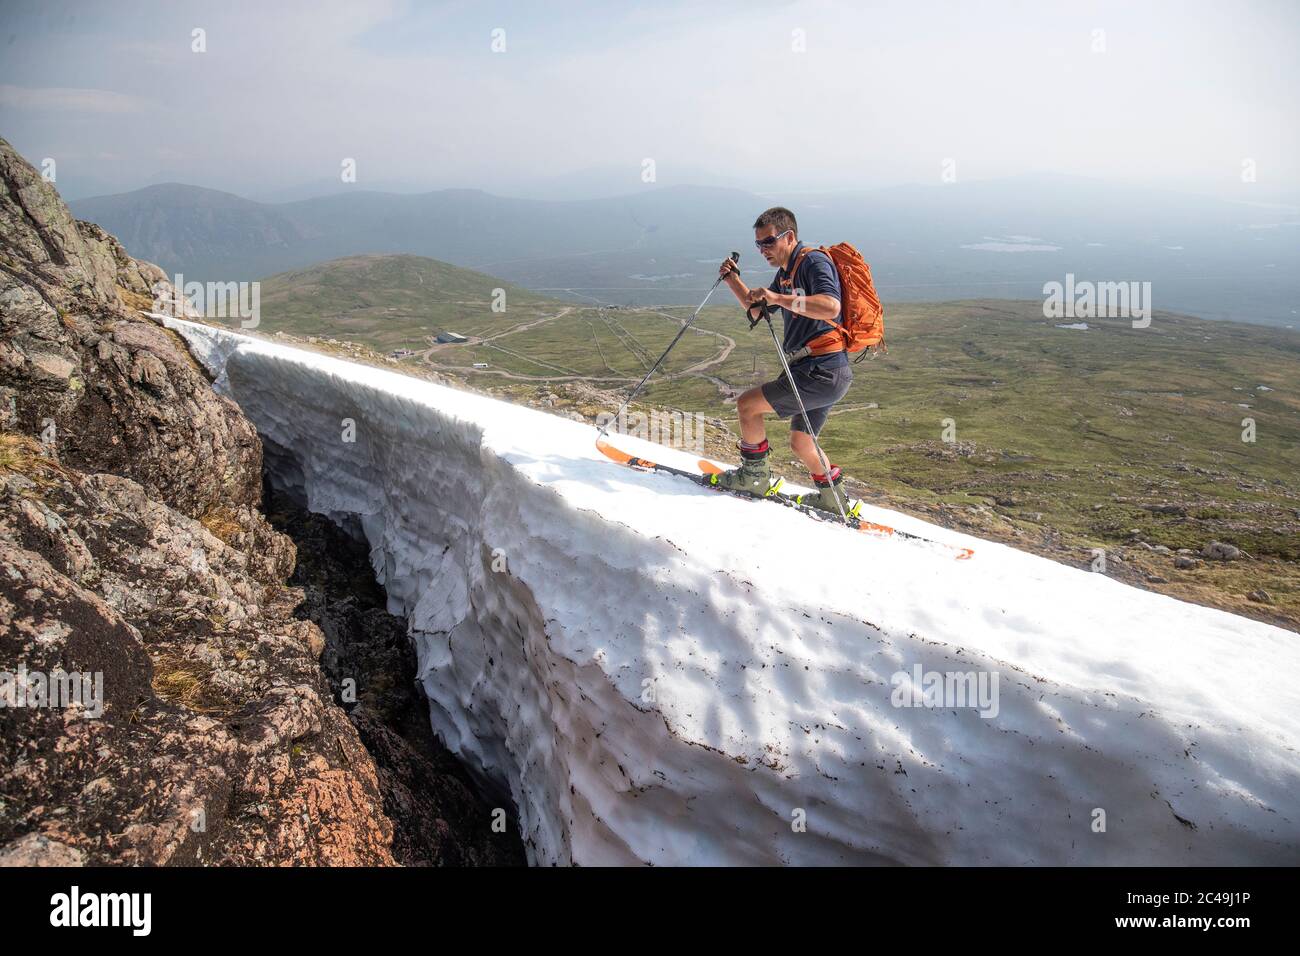 Andy Meldrum, propriétaire du Glencoe Mountain Resort, enchaîne certaines des pistes de neige restantes sur les pistes de Meall a'Bhuiridh à Glencoe, car jeudi pourrait être le jour le plus chaud de l'année au Royaume-Uni avec des températures brûlants qui devraient augmenter encore davantage. Banque D'Images